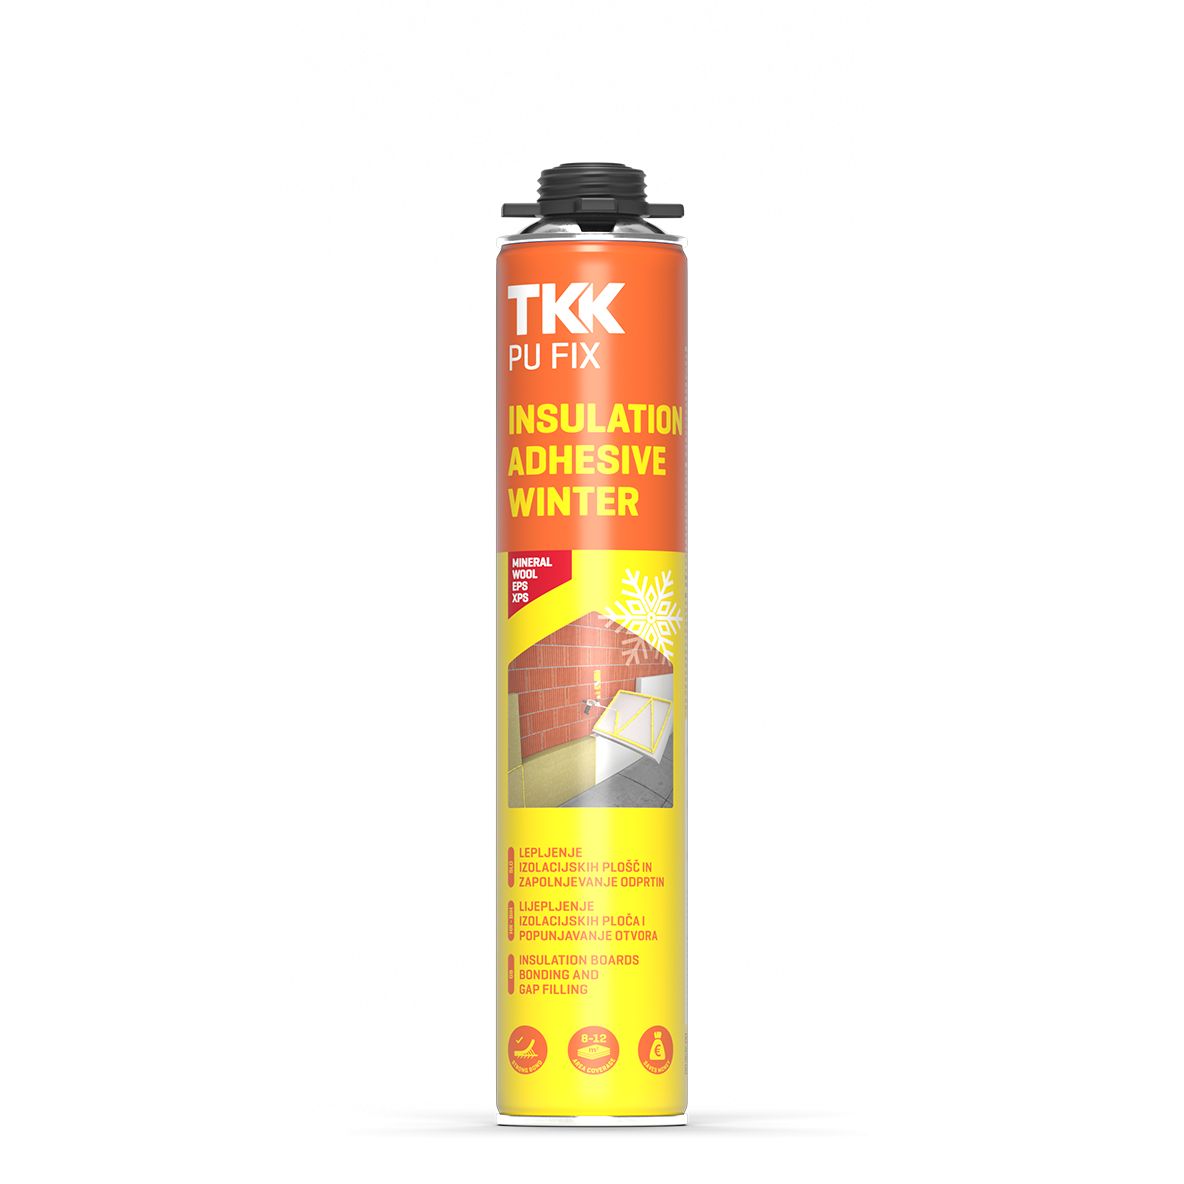 TKK Pu Fix Insulation Adhesive Winter G